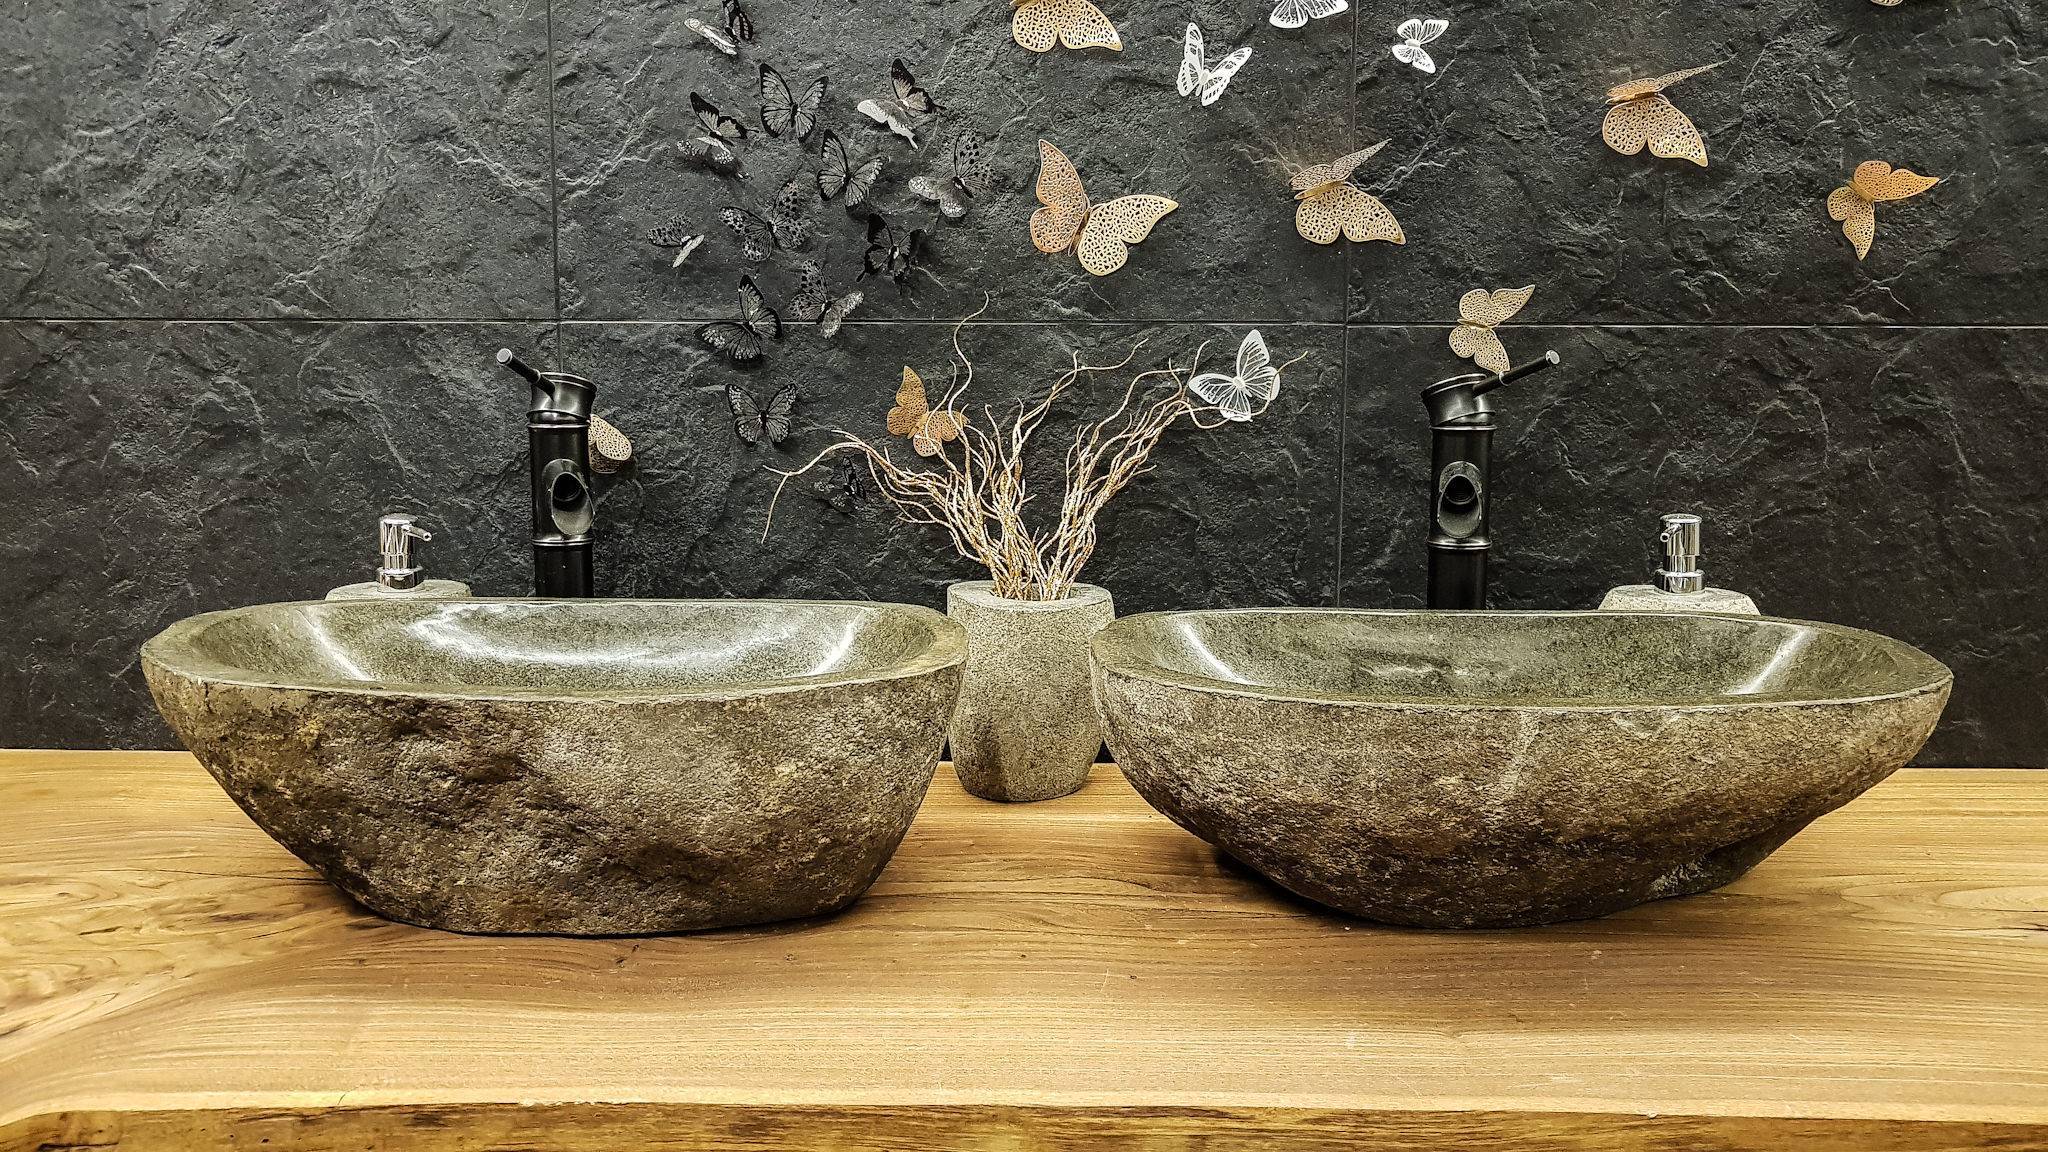 Раковина в ванну из камня. Раковина 3040 model Речной камень. Stone Sink каменная раковина. Раковина из натурального камня в ванную. Раковины из камня для ванной комнаты.